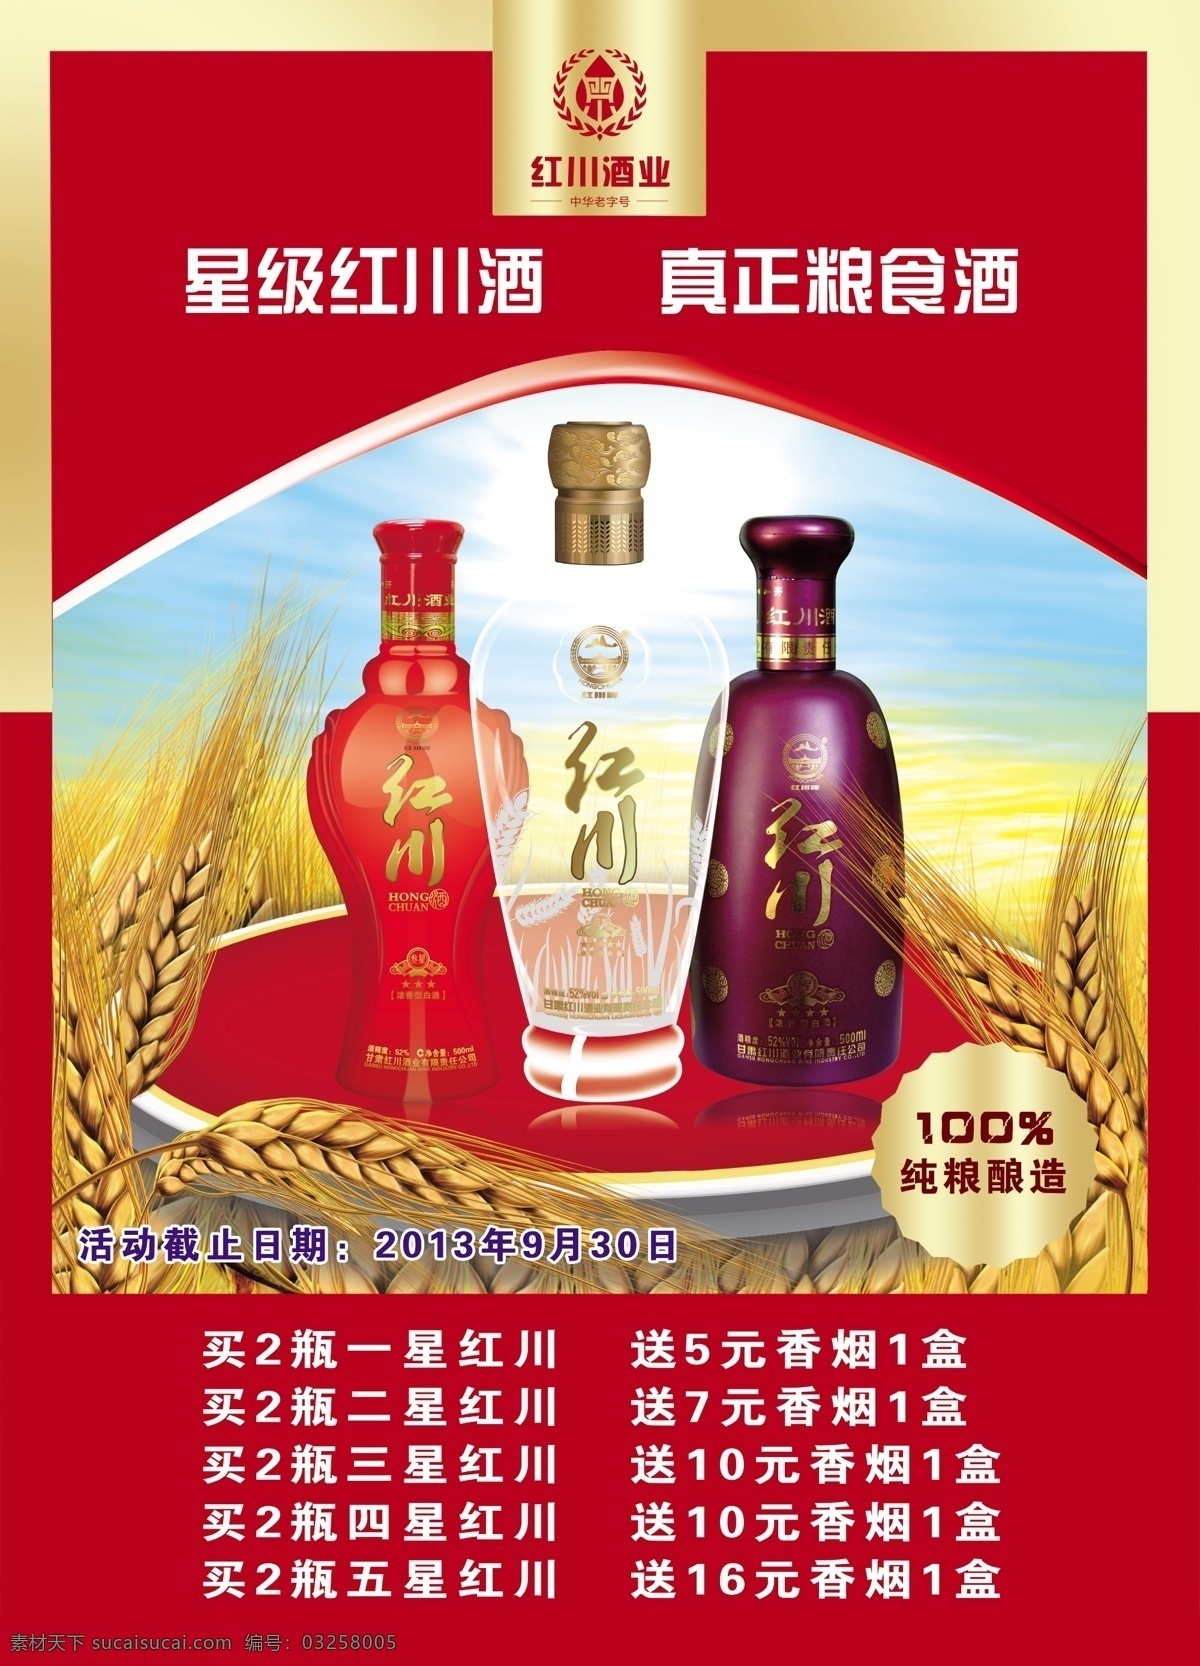 星级红川 红川酒 酒类 白酒 海报 广告设计模板 源文件